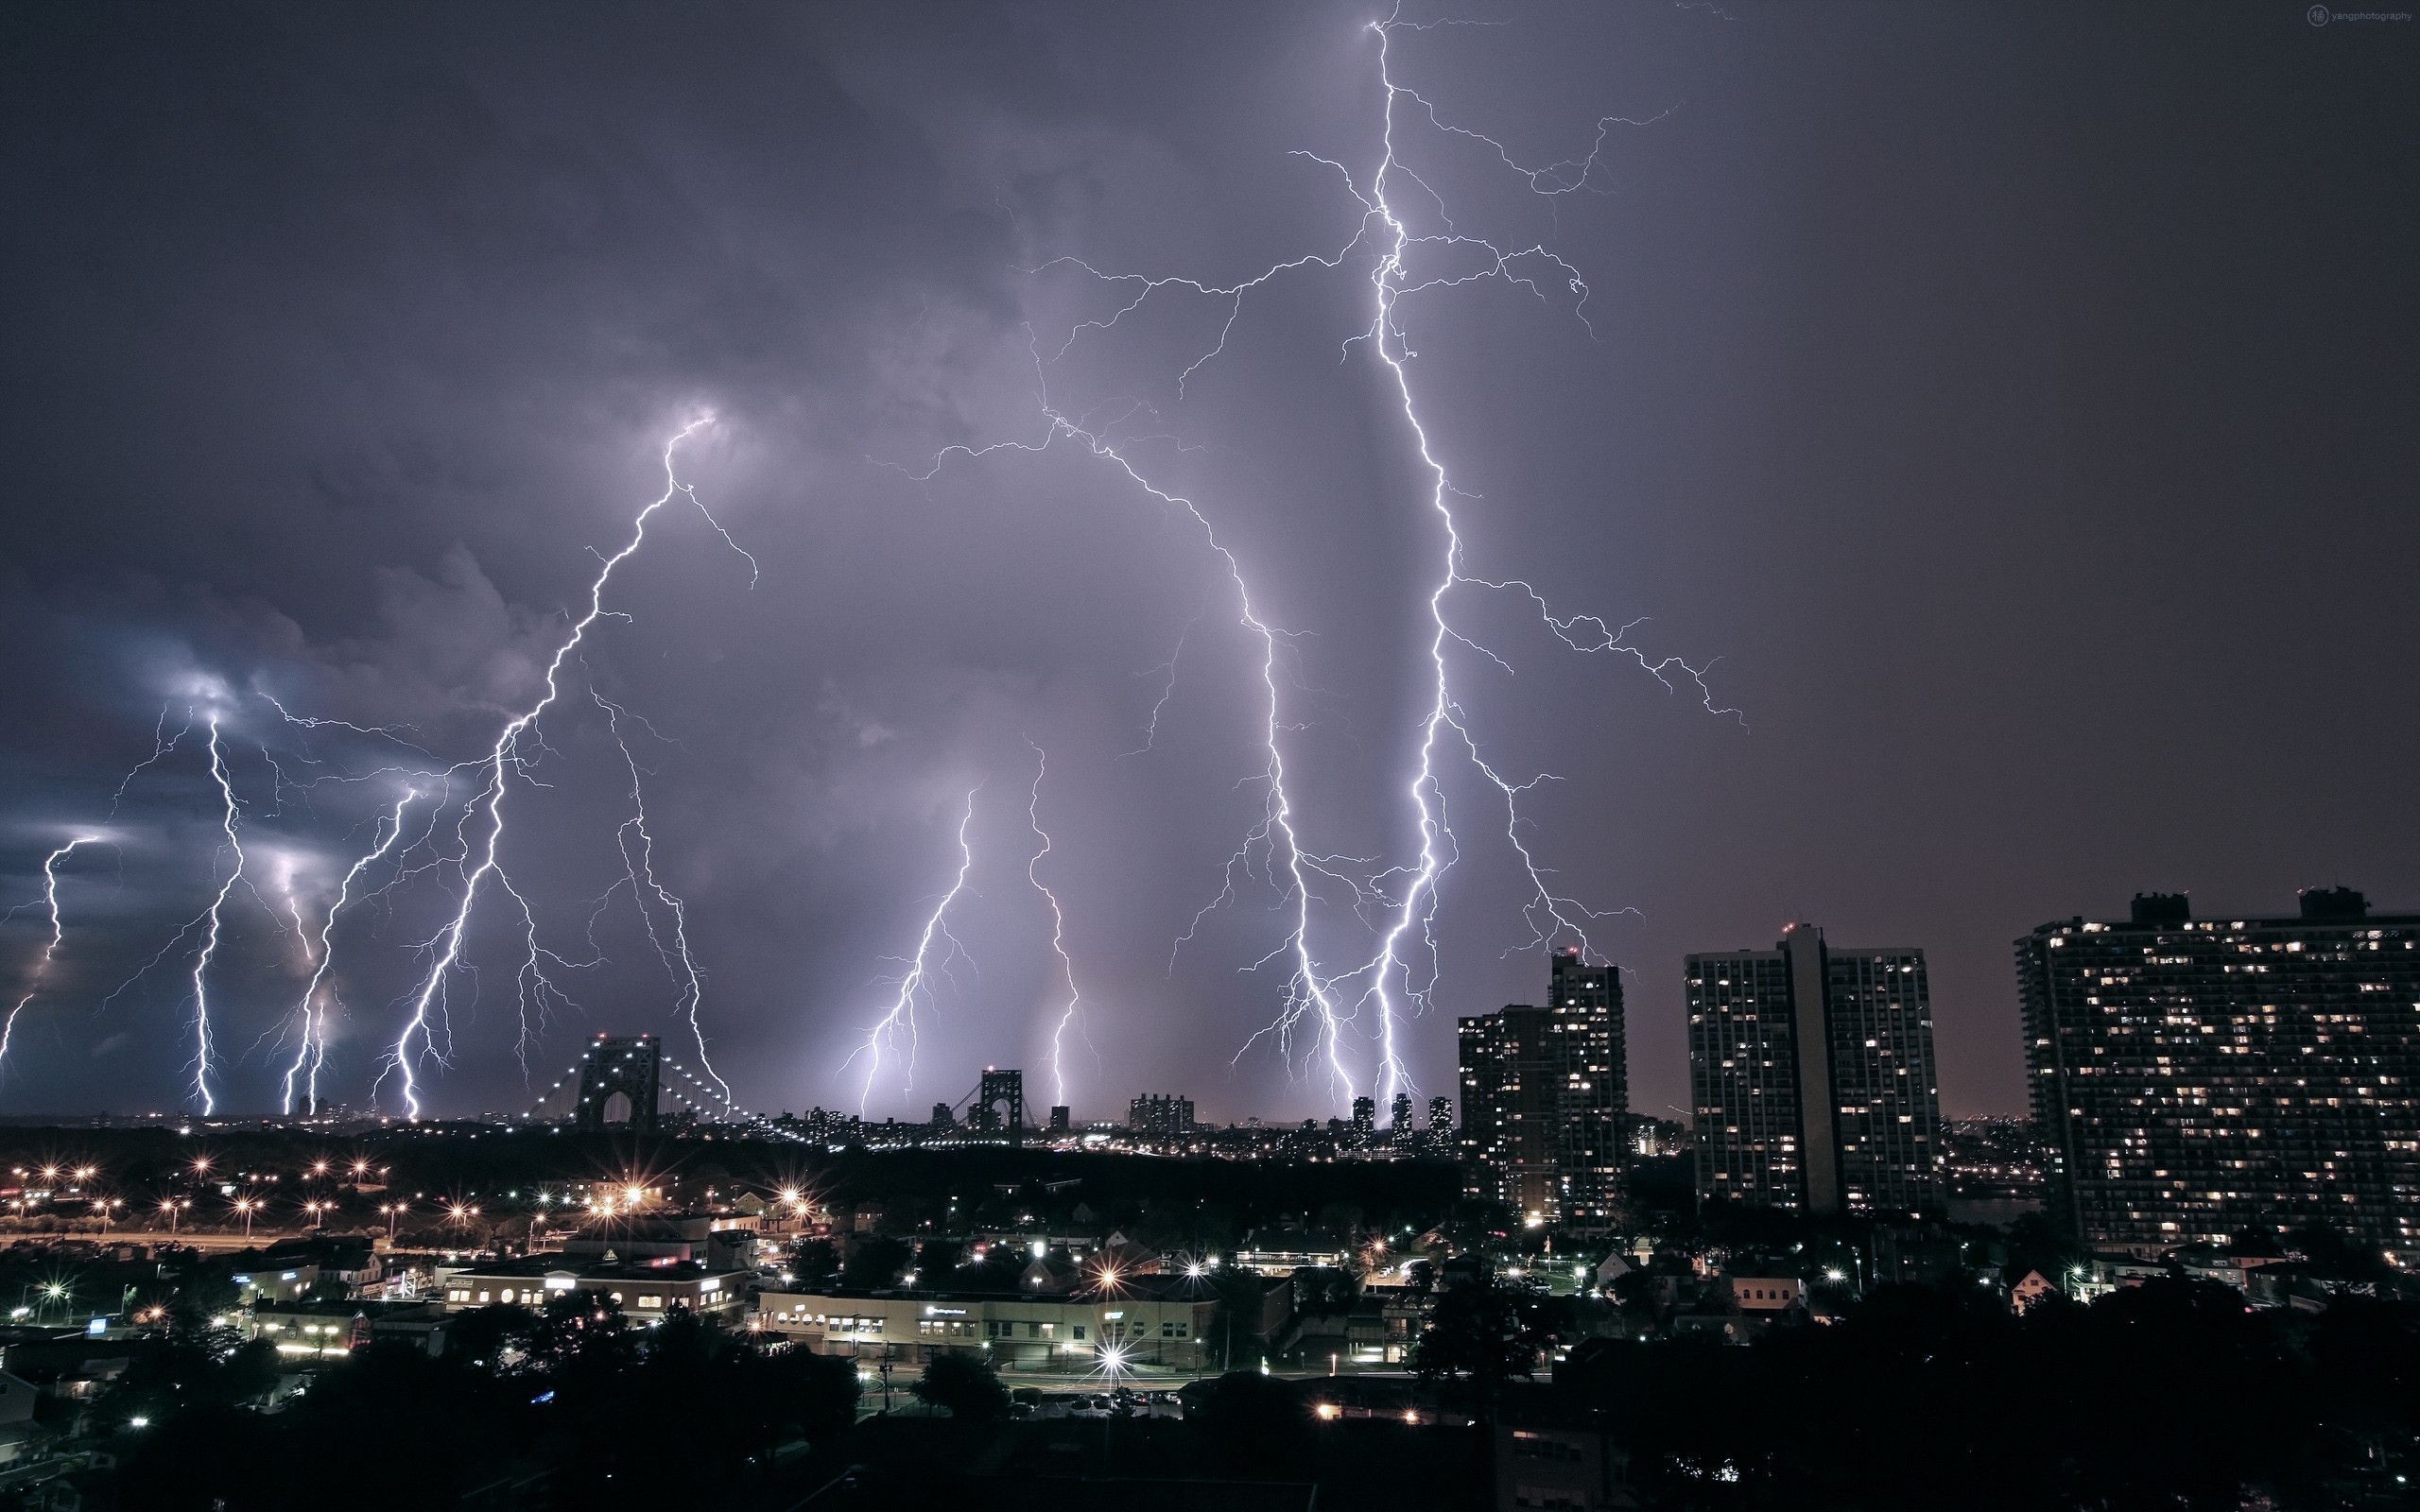 ocean lightning storms – Google Search | Lightning storms | Pinterest |  Lightning, Storms and Nature wallpaper